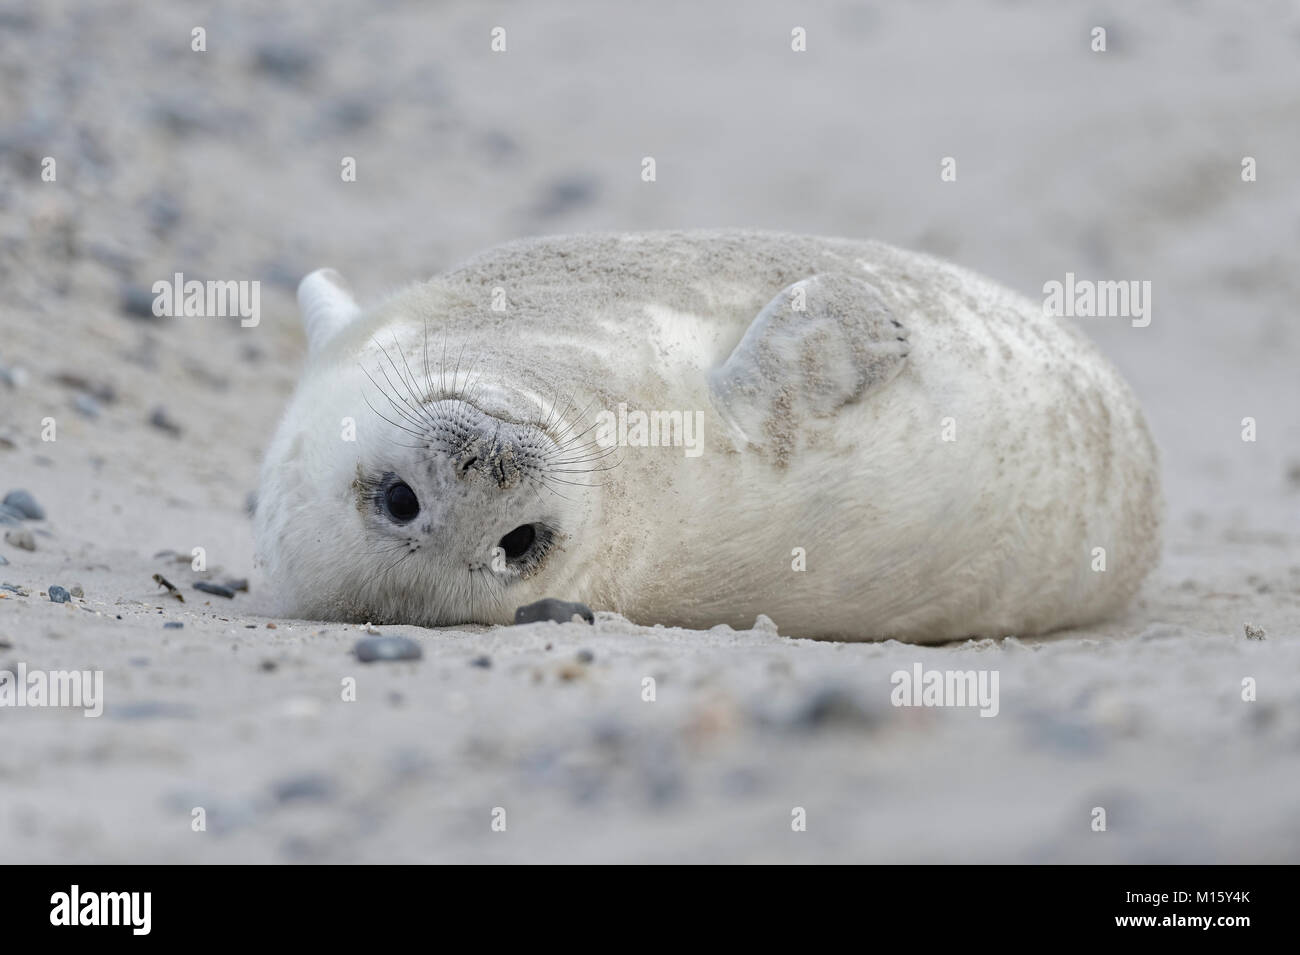 Guarnizione grigio (Halichoerus grypus),giovane animale in bianco capelli embrionale o Lanugo,si trova sul retro presso la spiaggia di sabbia Foto Stock